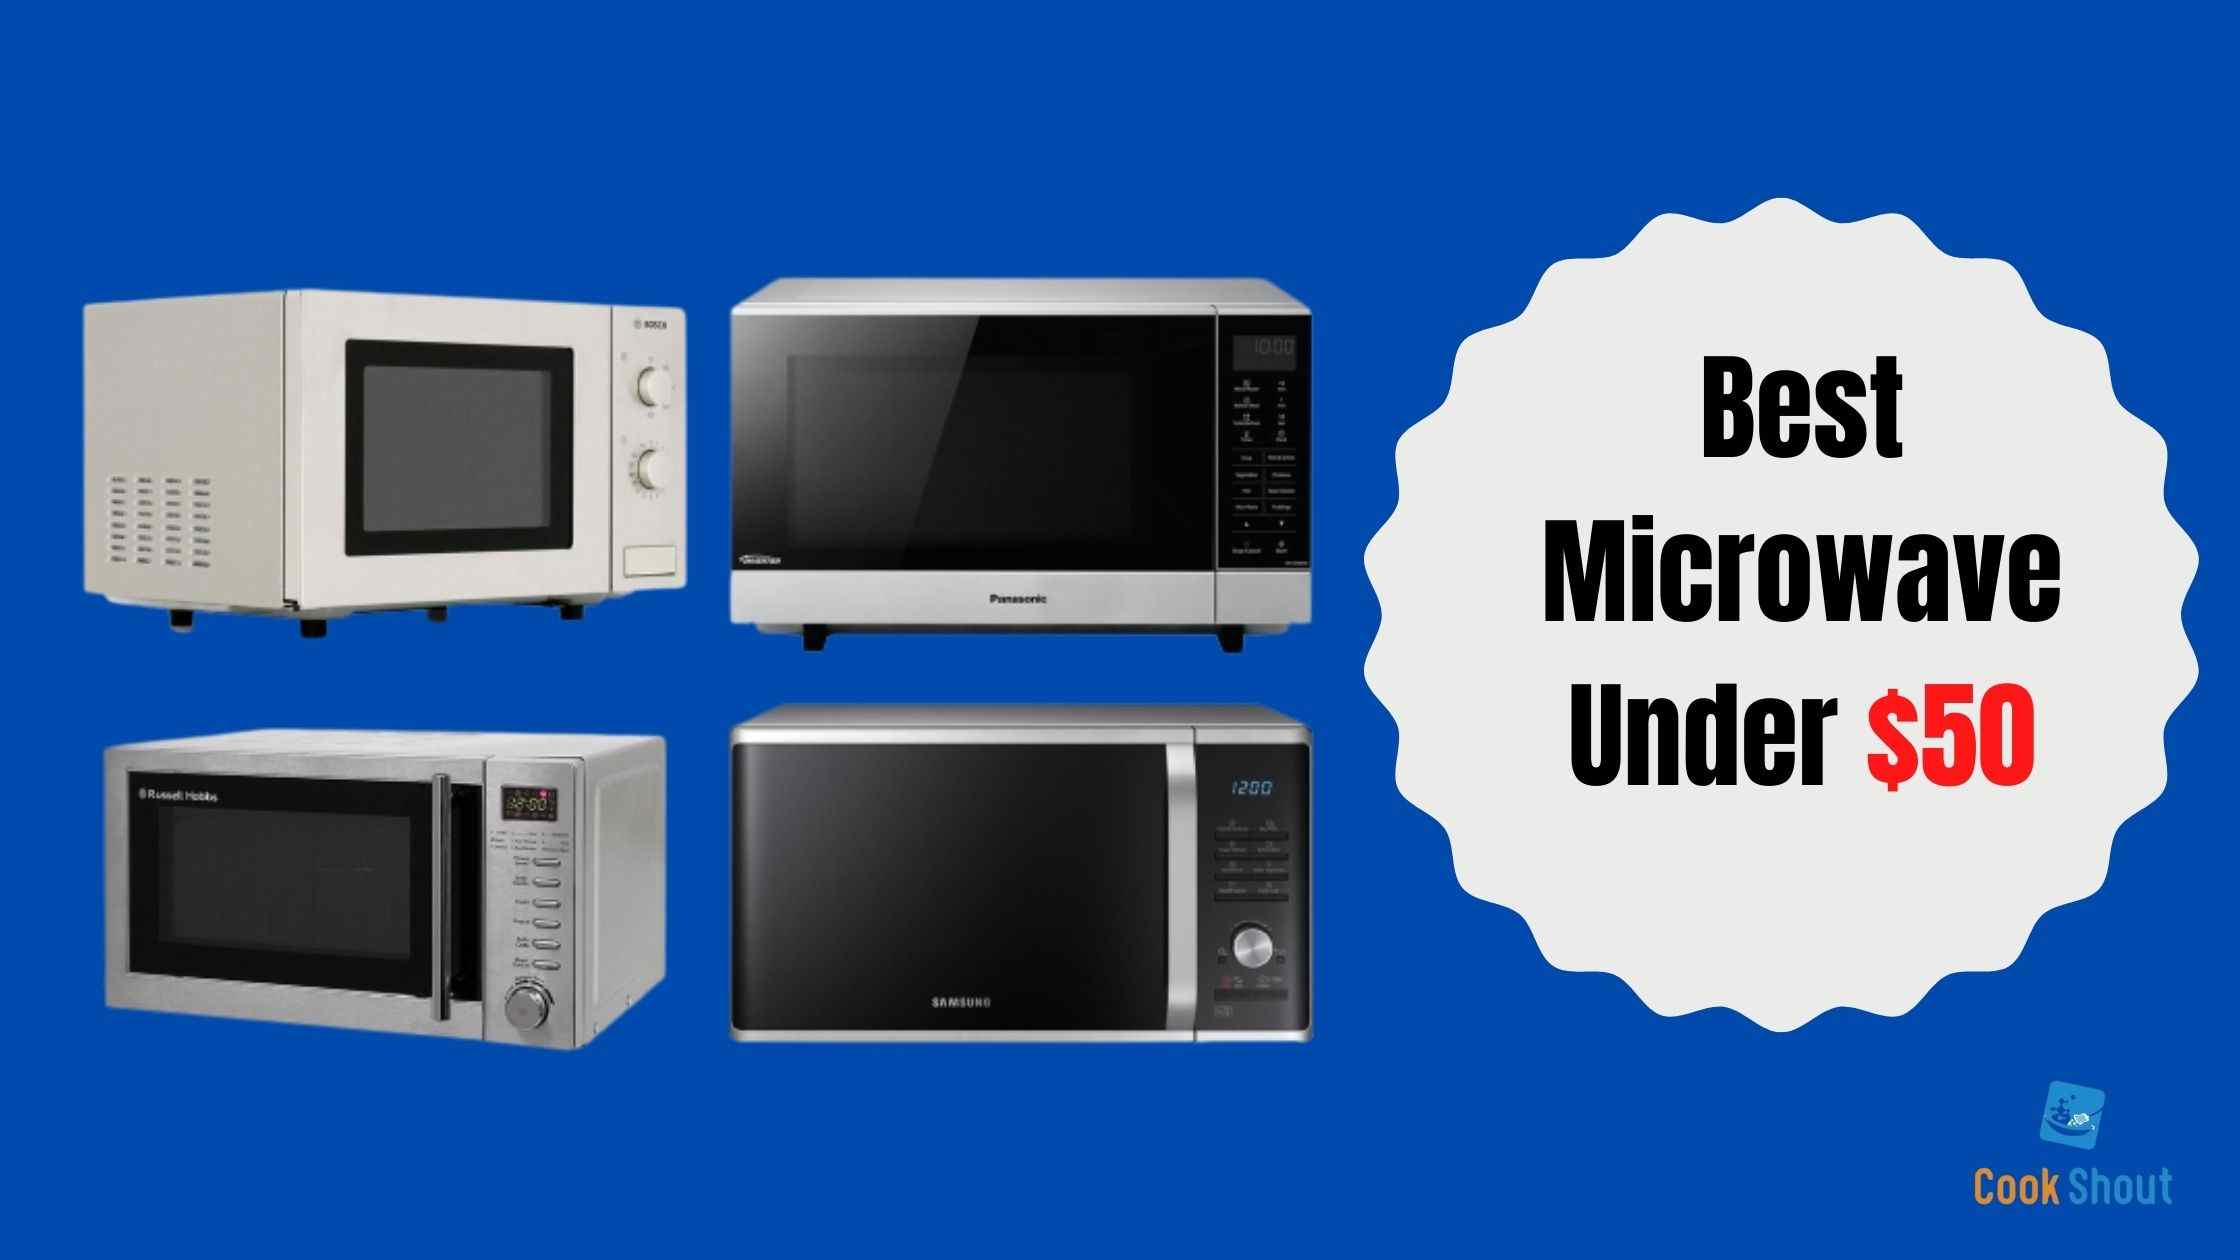 Best Microwave Under $50